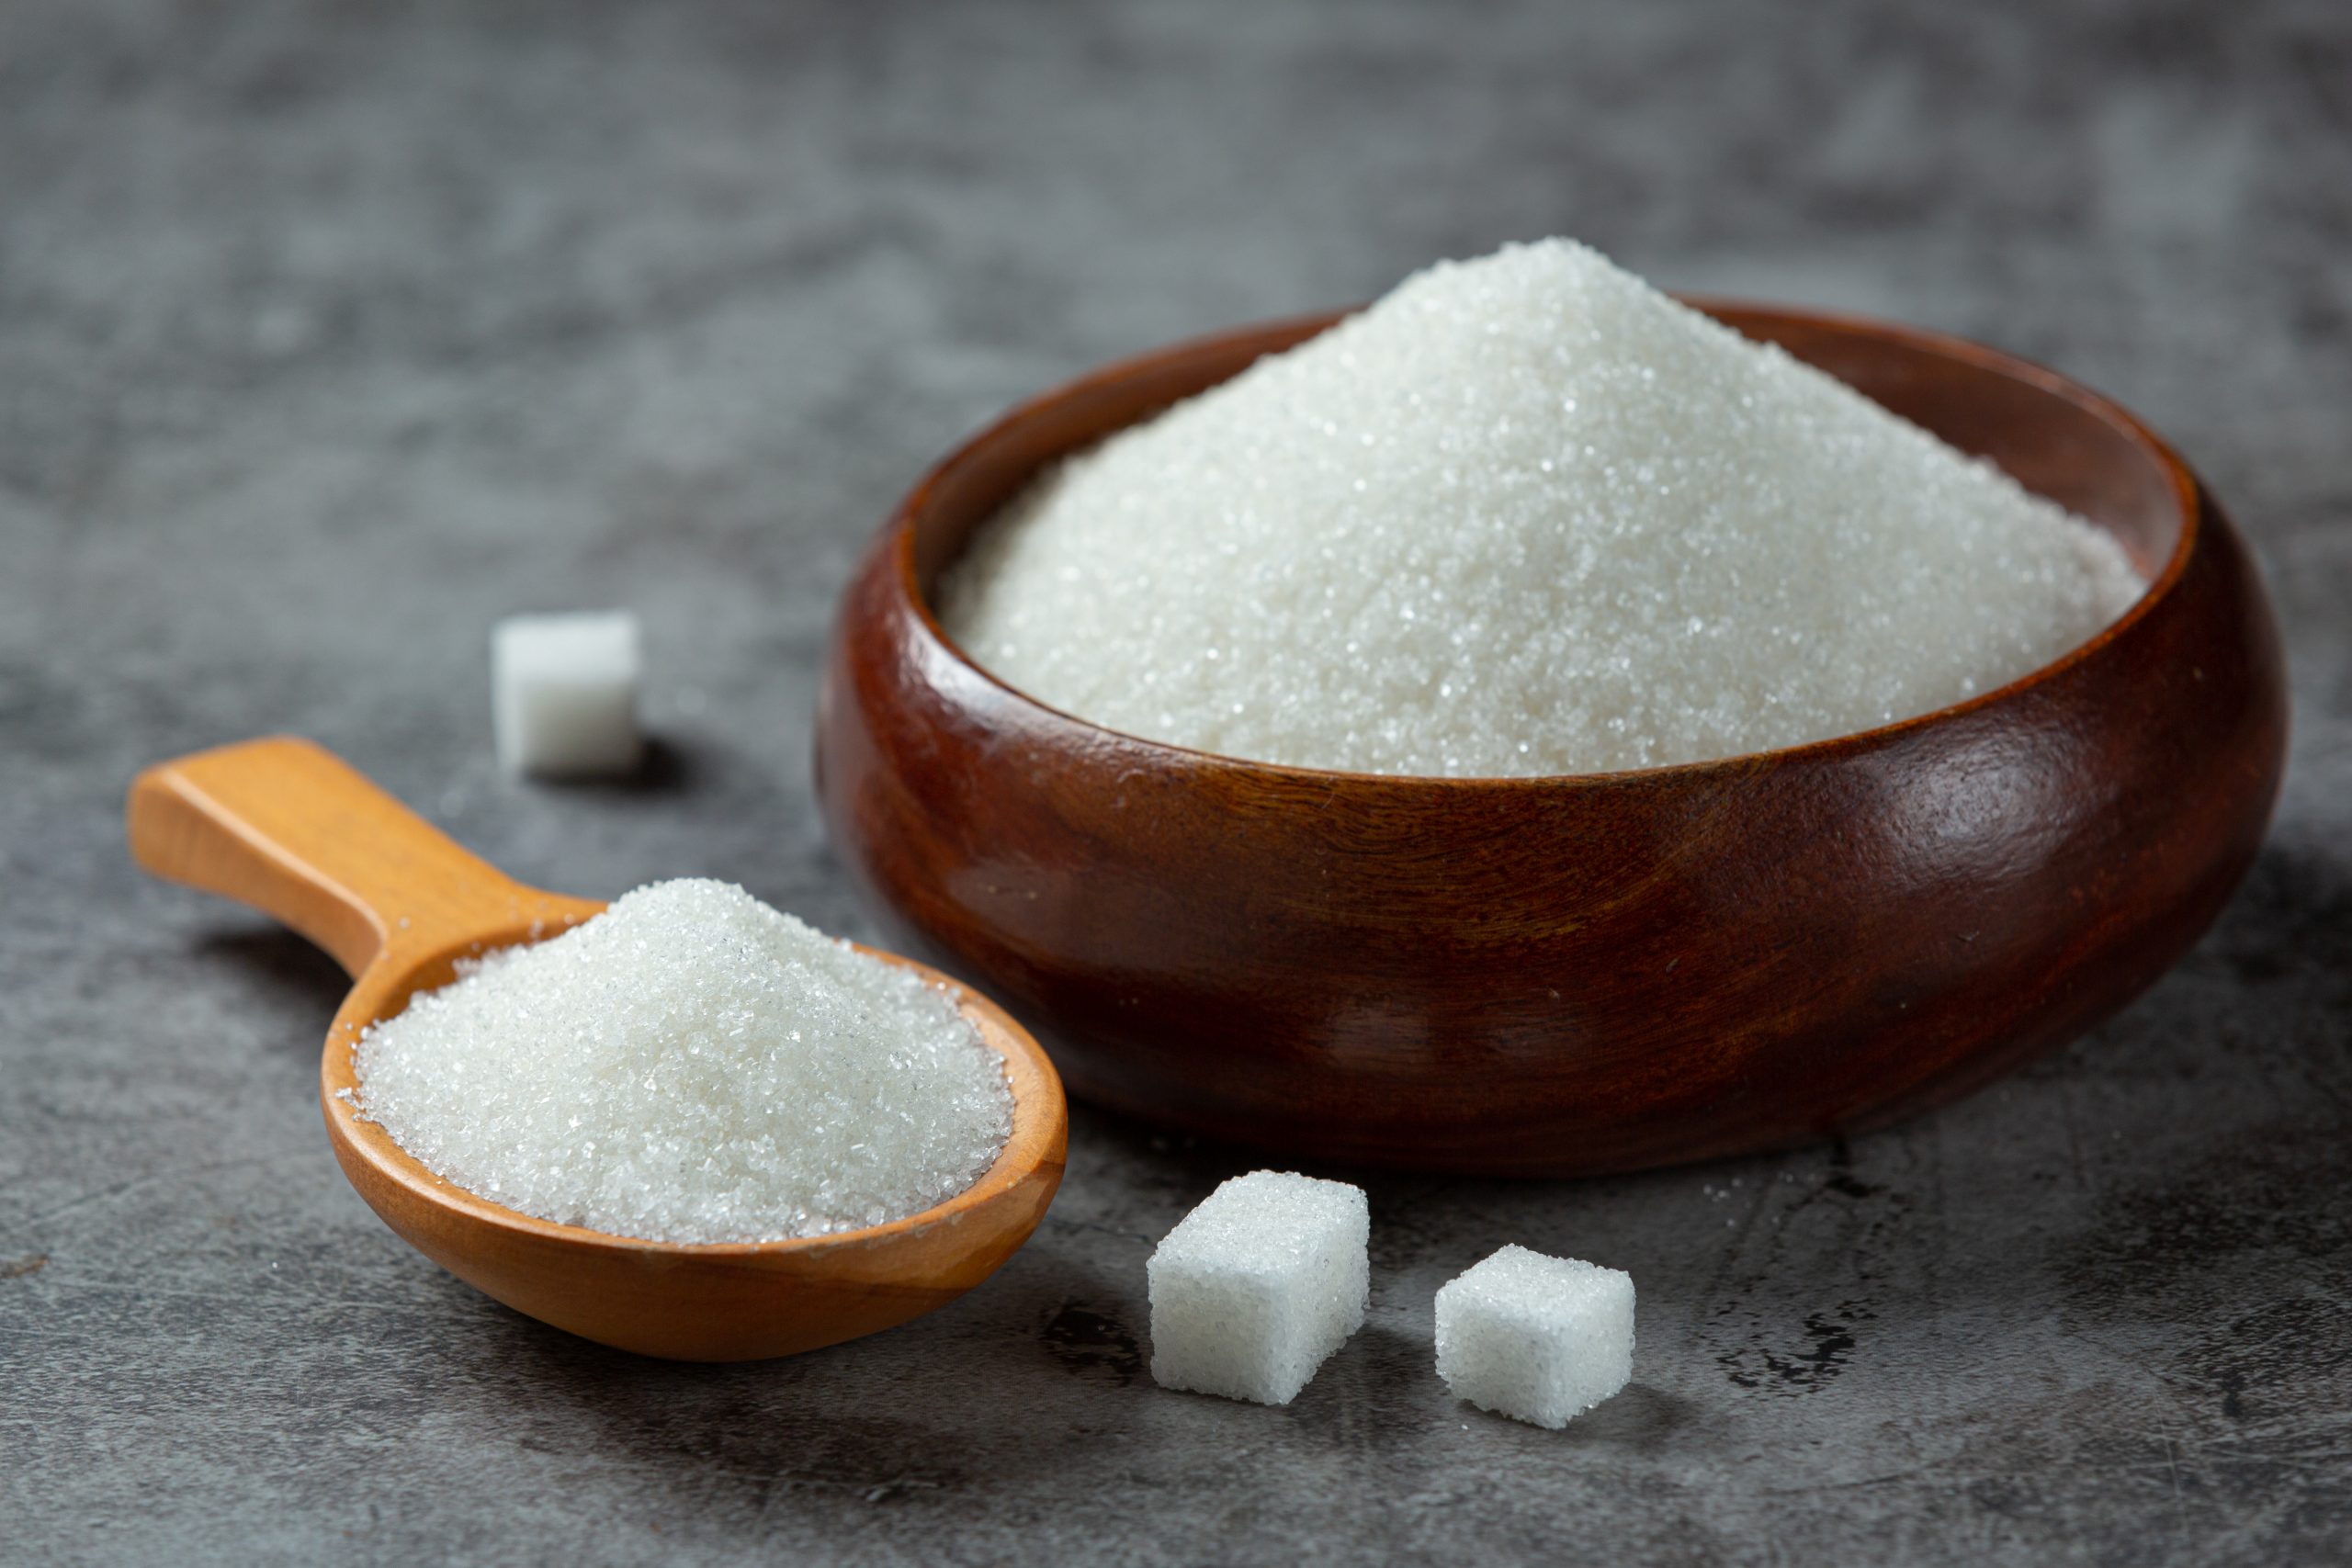 Você pode estar consumindo mais açúcar do que imagina. Especialista explica o porquê.